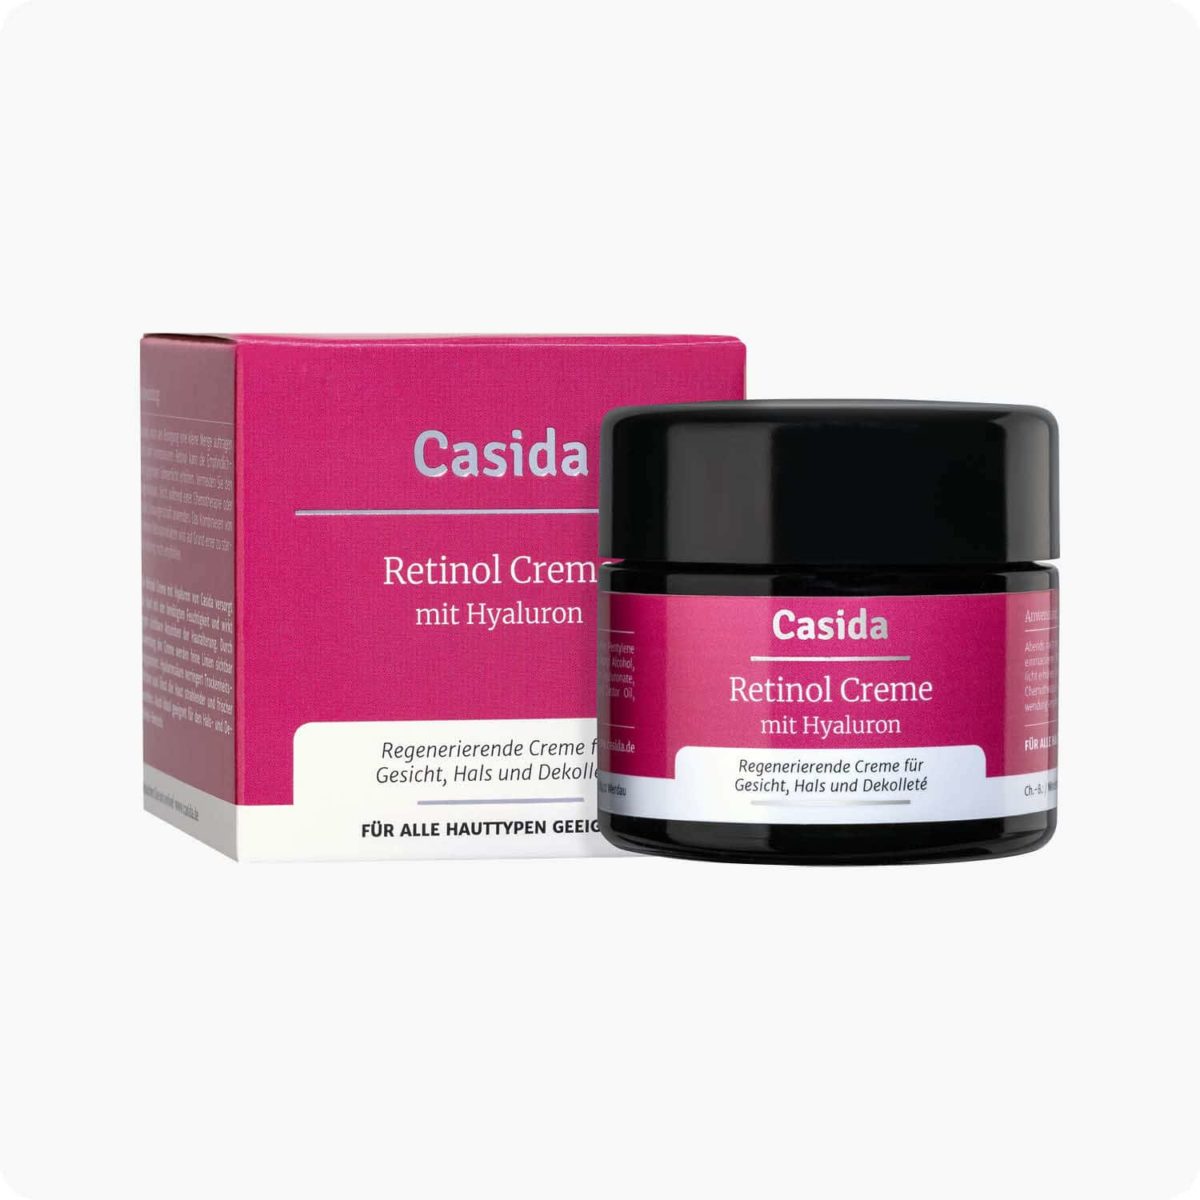 Casida Retinol Creme mit Hyaluron – 50 ml 15408244 PZN Apotheke Anti-Aging